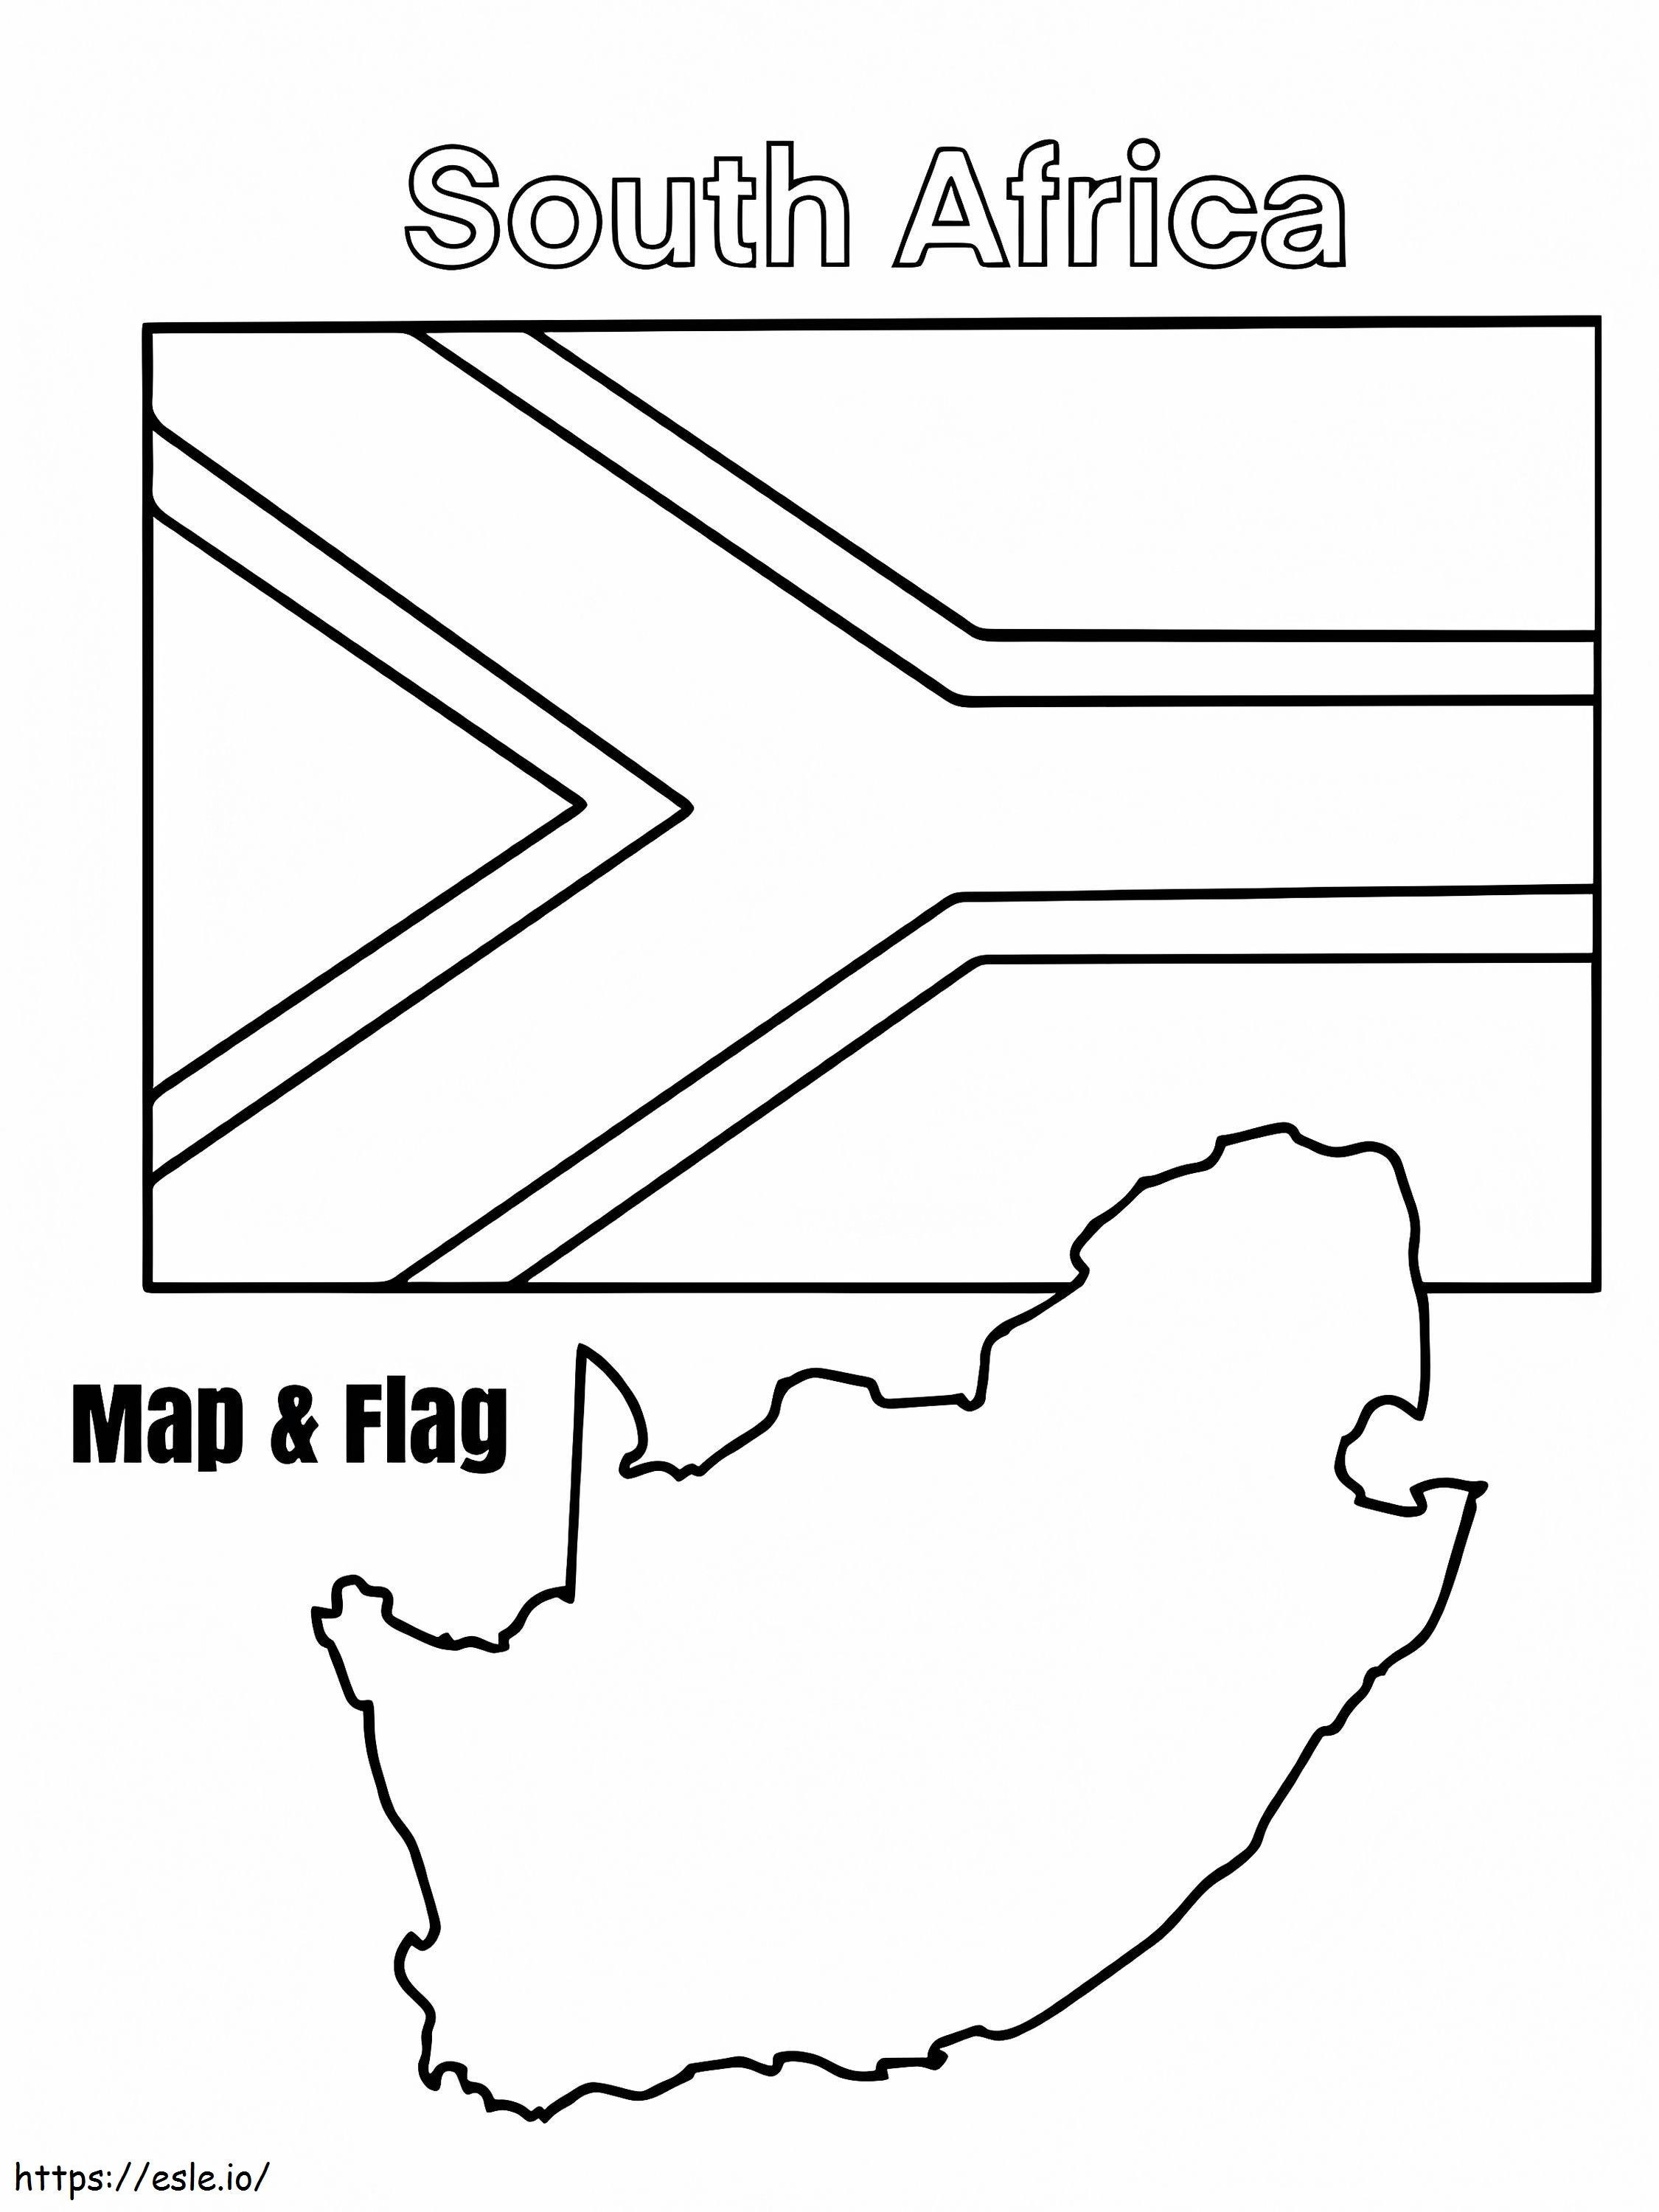 Bendera dan Peta Afrika Selatan Gambar Mewarnai